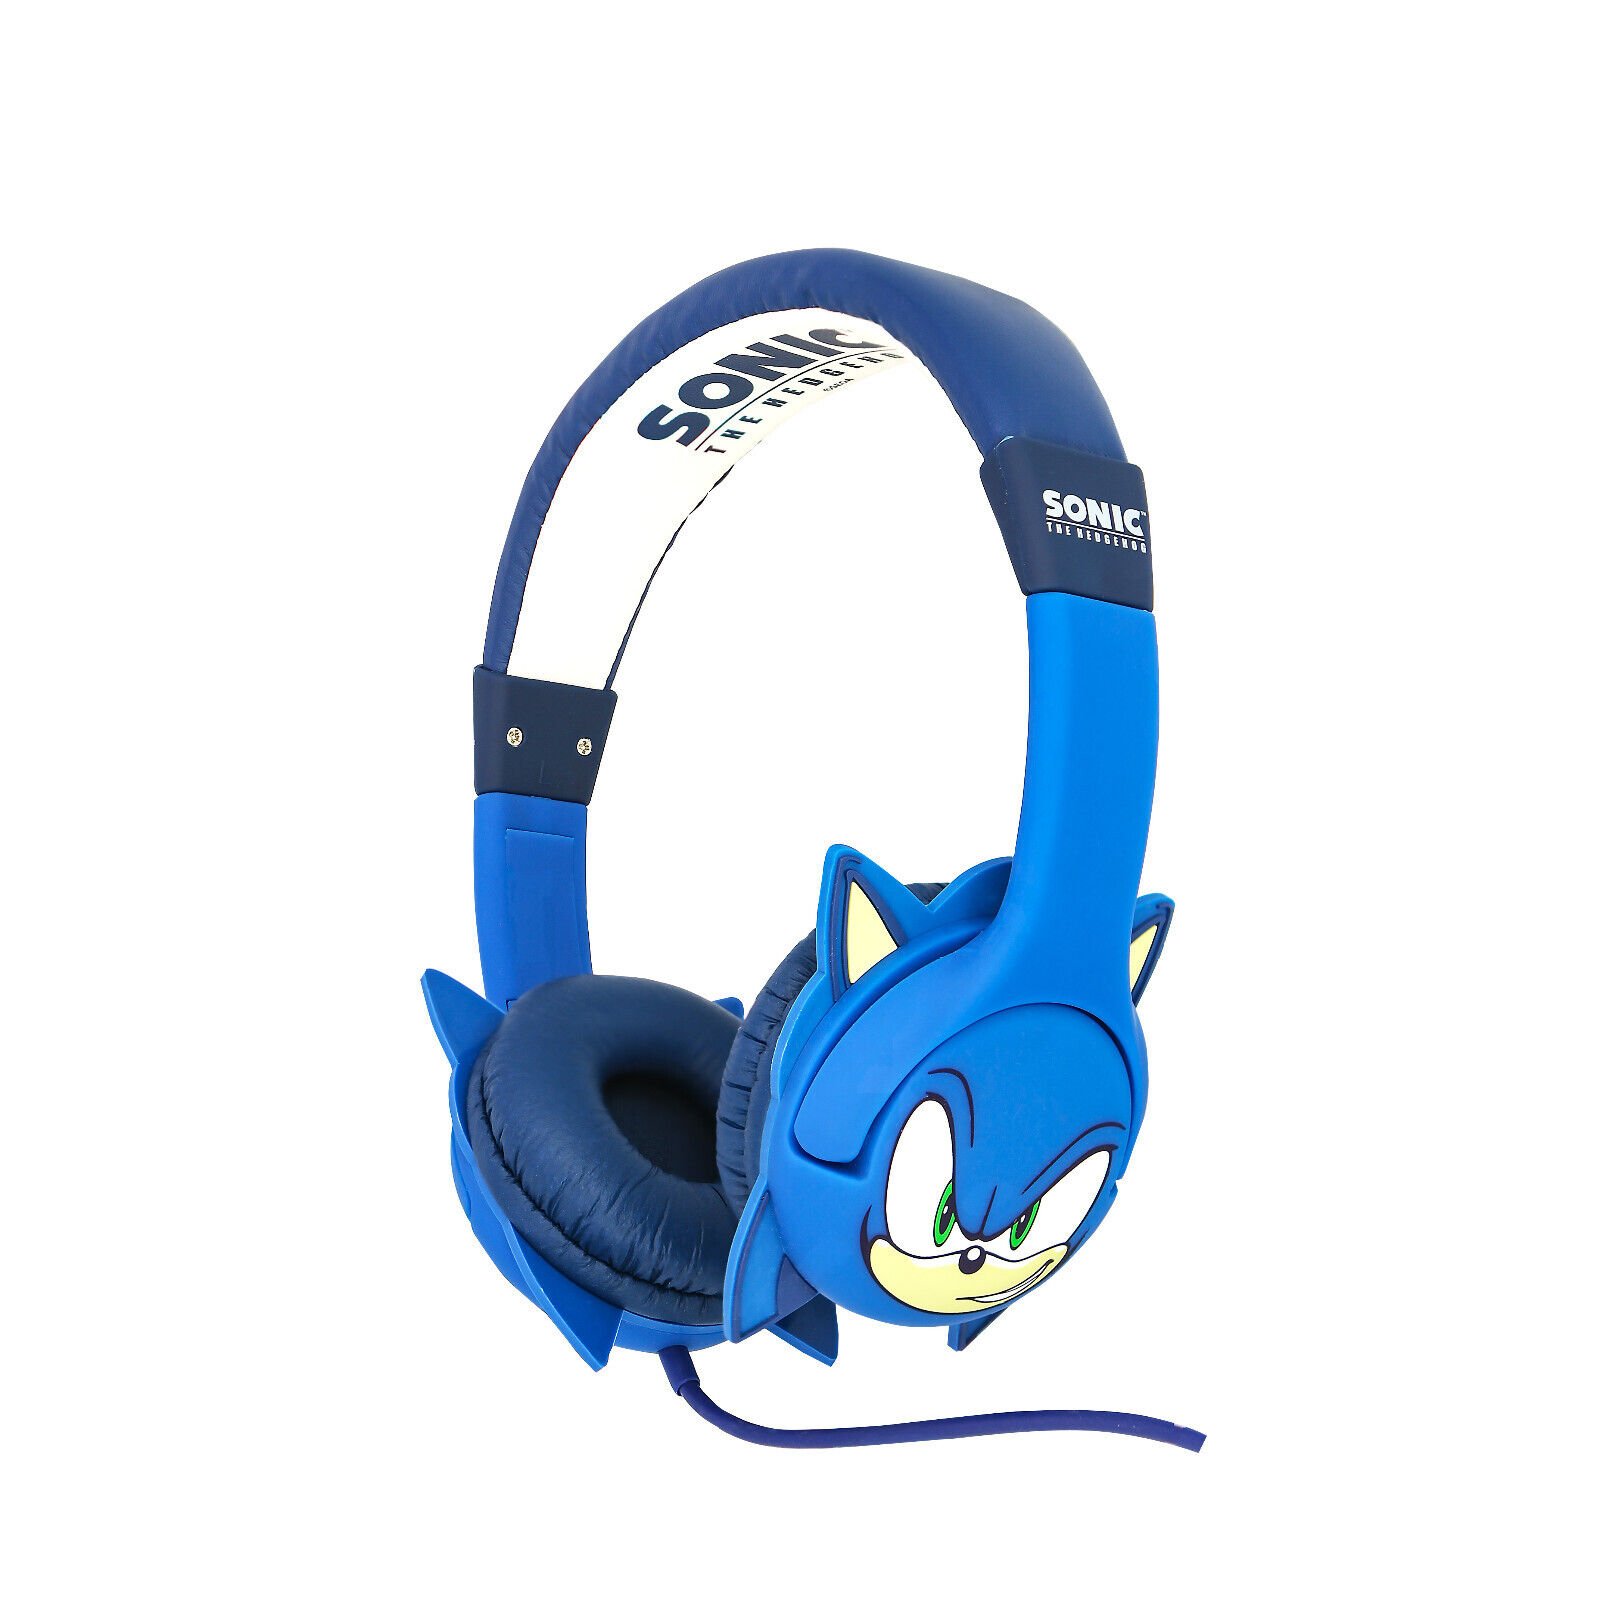 OTL - Sonic moulded ears childrens headphones von OTL